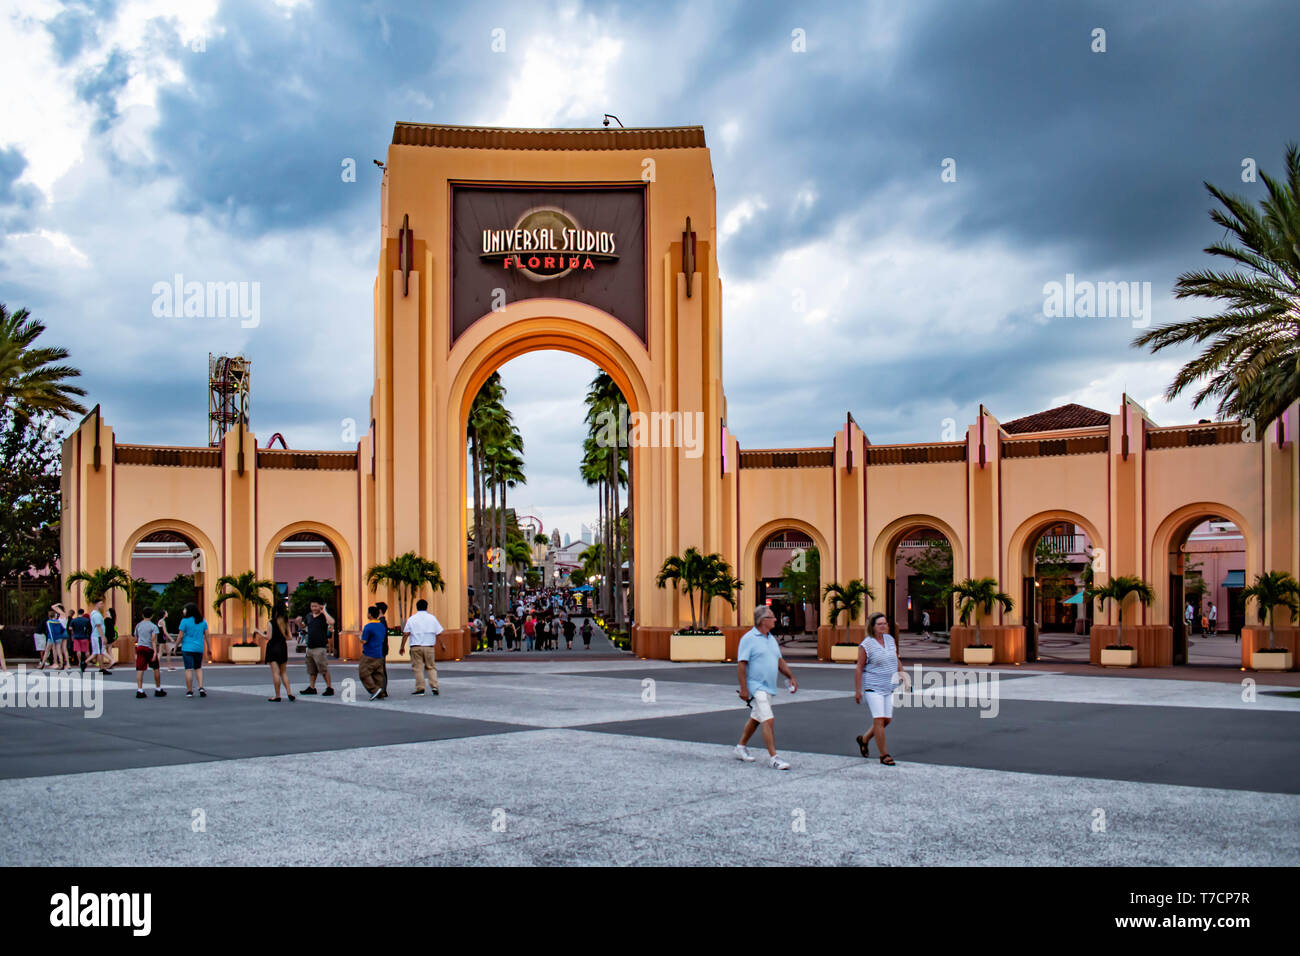 Nắm bắt được cảm giác thăng hoa trên nền trời mây và cổng vào Universal Studios tại Orlando, Florida sẽ khiến bạn có những trải nghiệm thật đặc biệt. Hãy xem hình ảnh và cùng những người bạn trải nghiệm những điều thú vị tại Universal Studios.